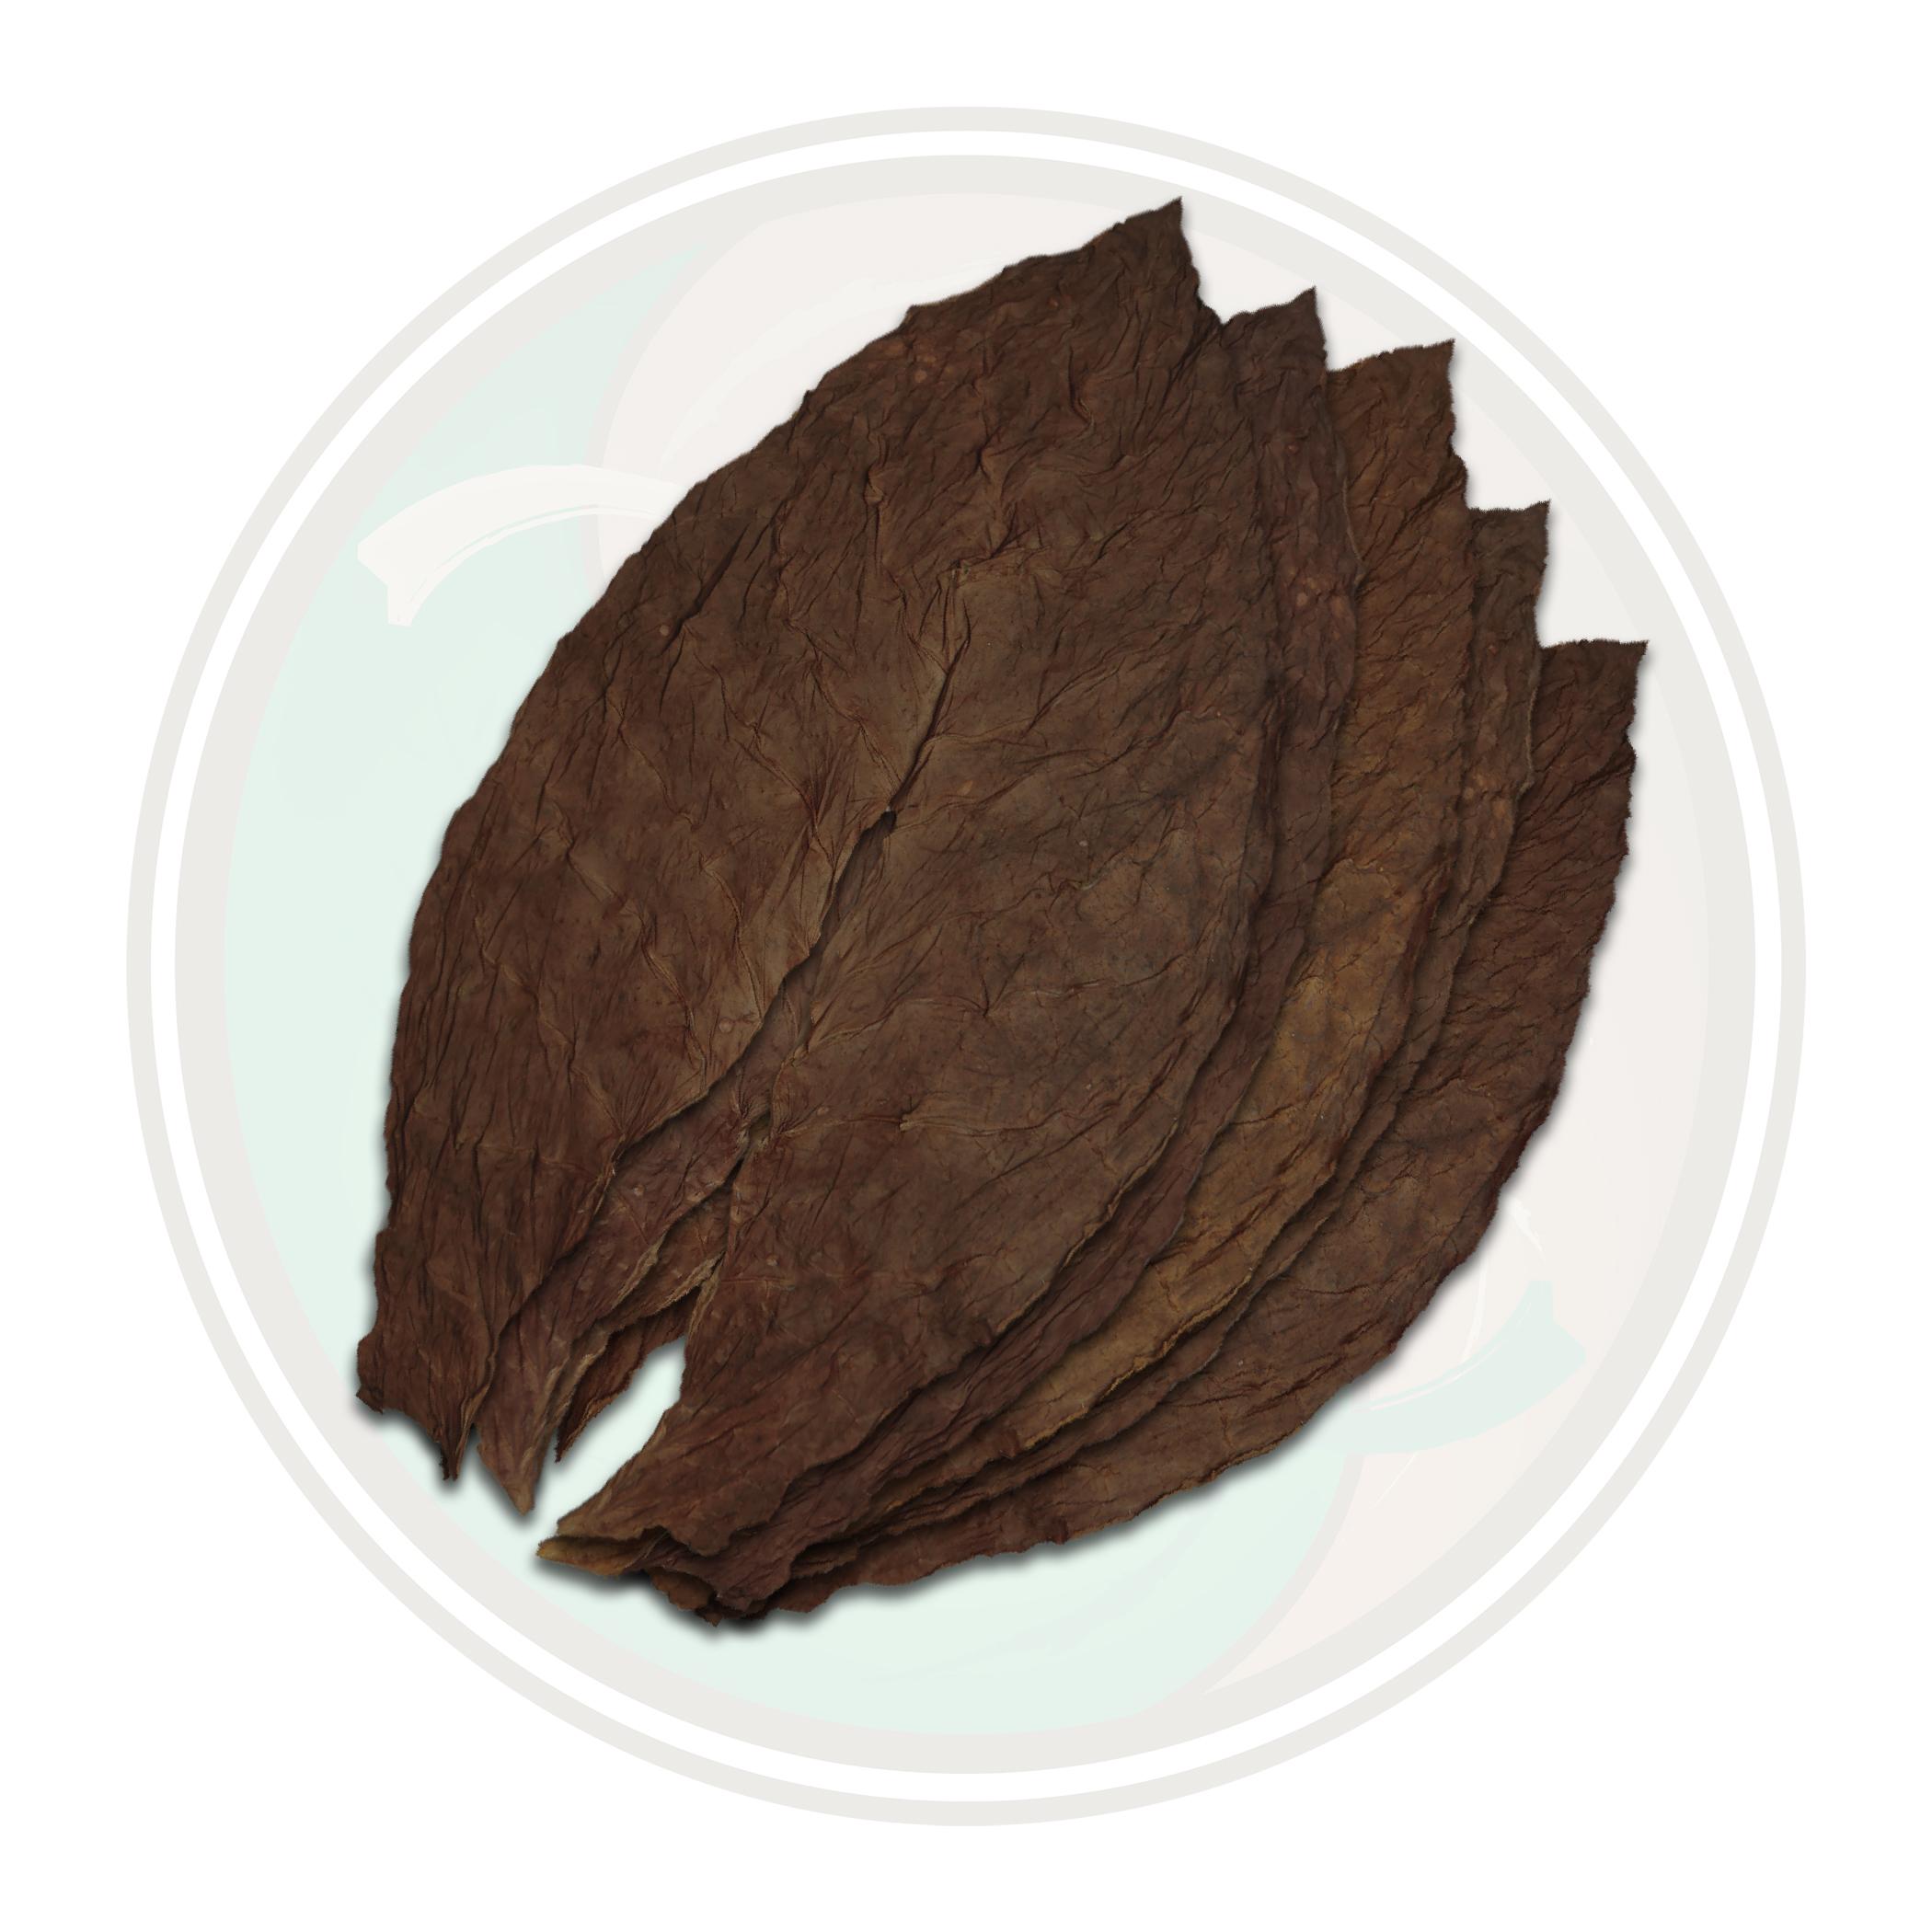 Dominican Ligero Piloto Cubano Seco Cigar Filler Whole Tobacco Leaf